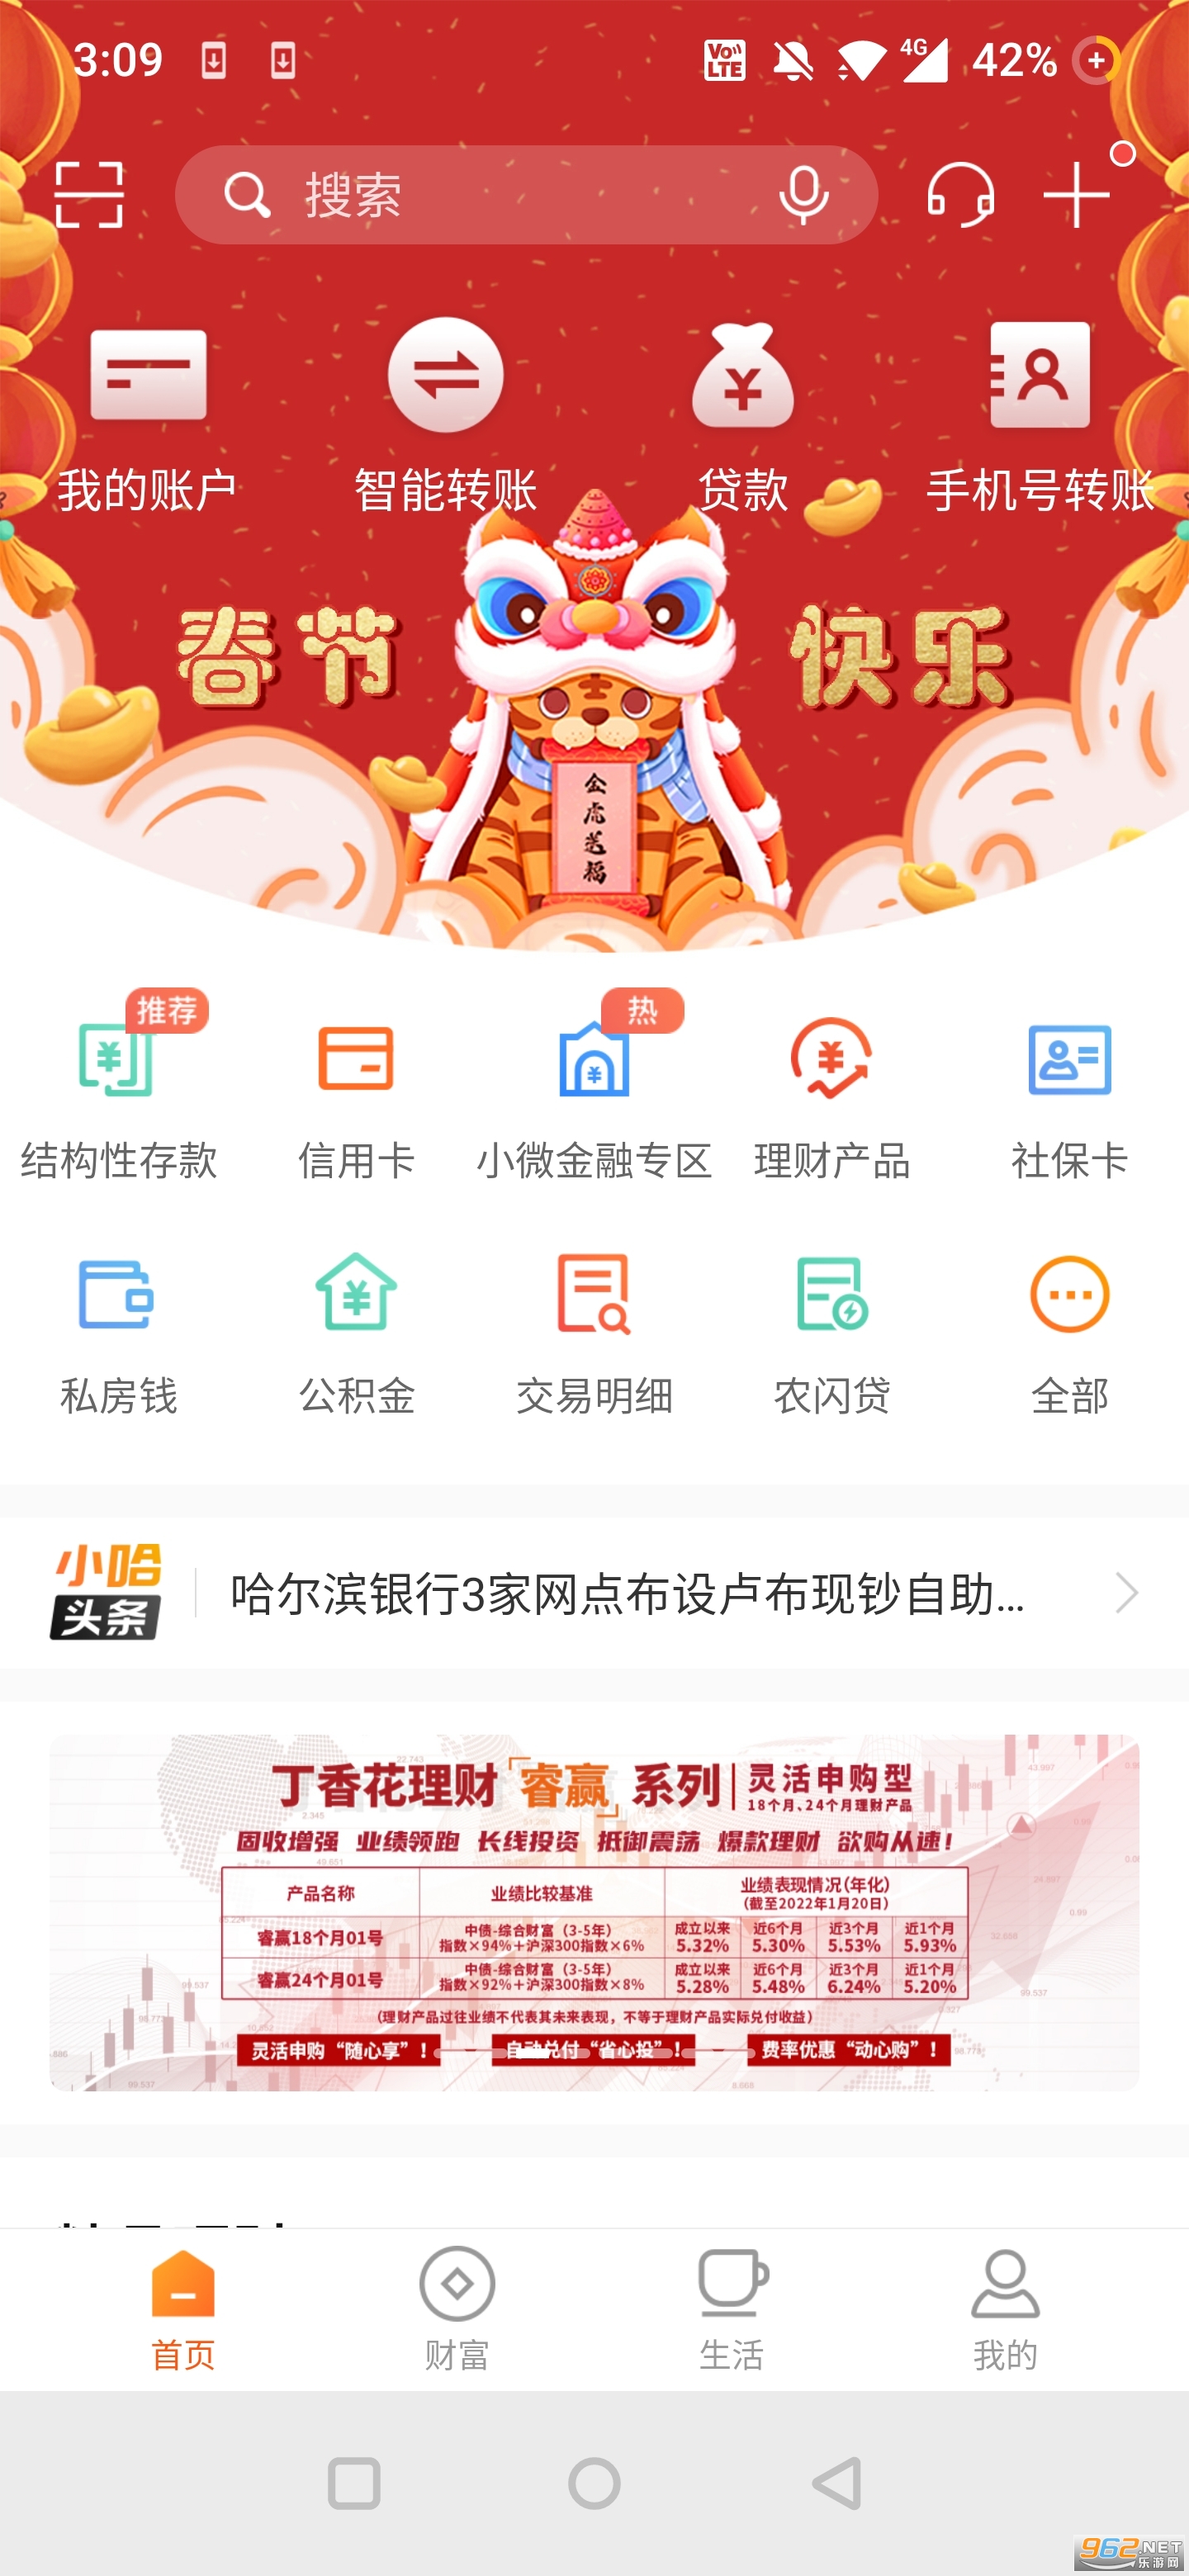 哈尔滨银行手机银行app 客户端v4.1.5